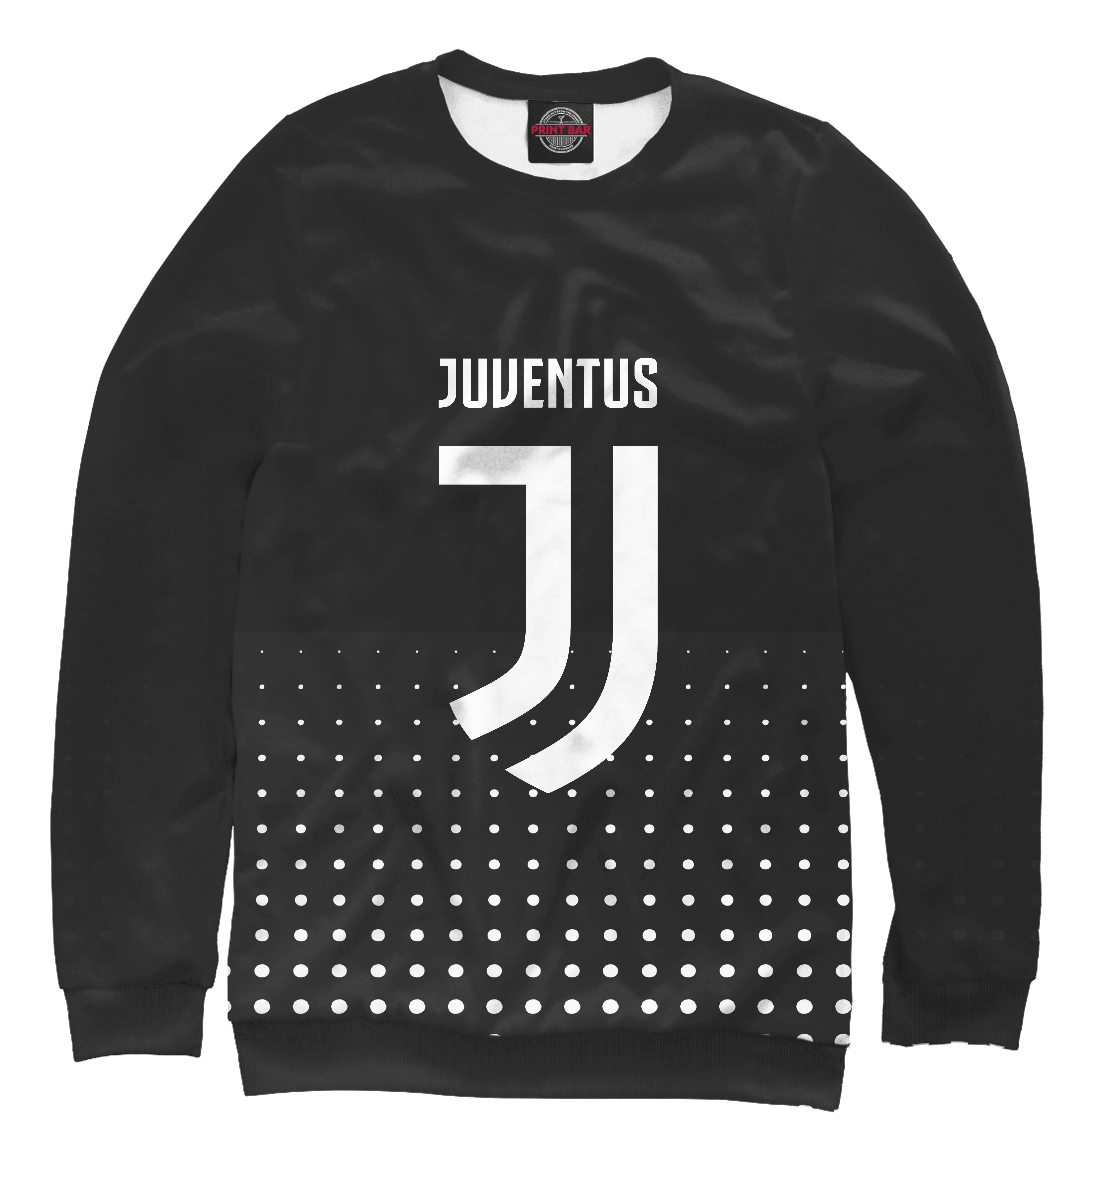 

Juventus